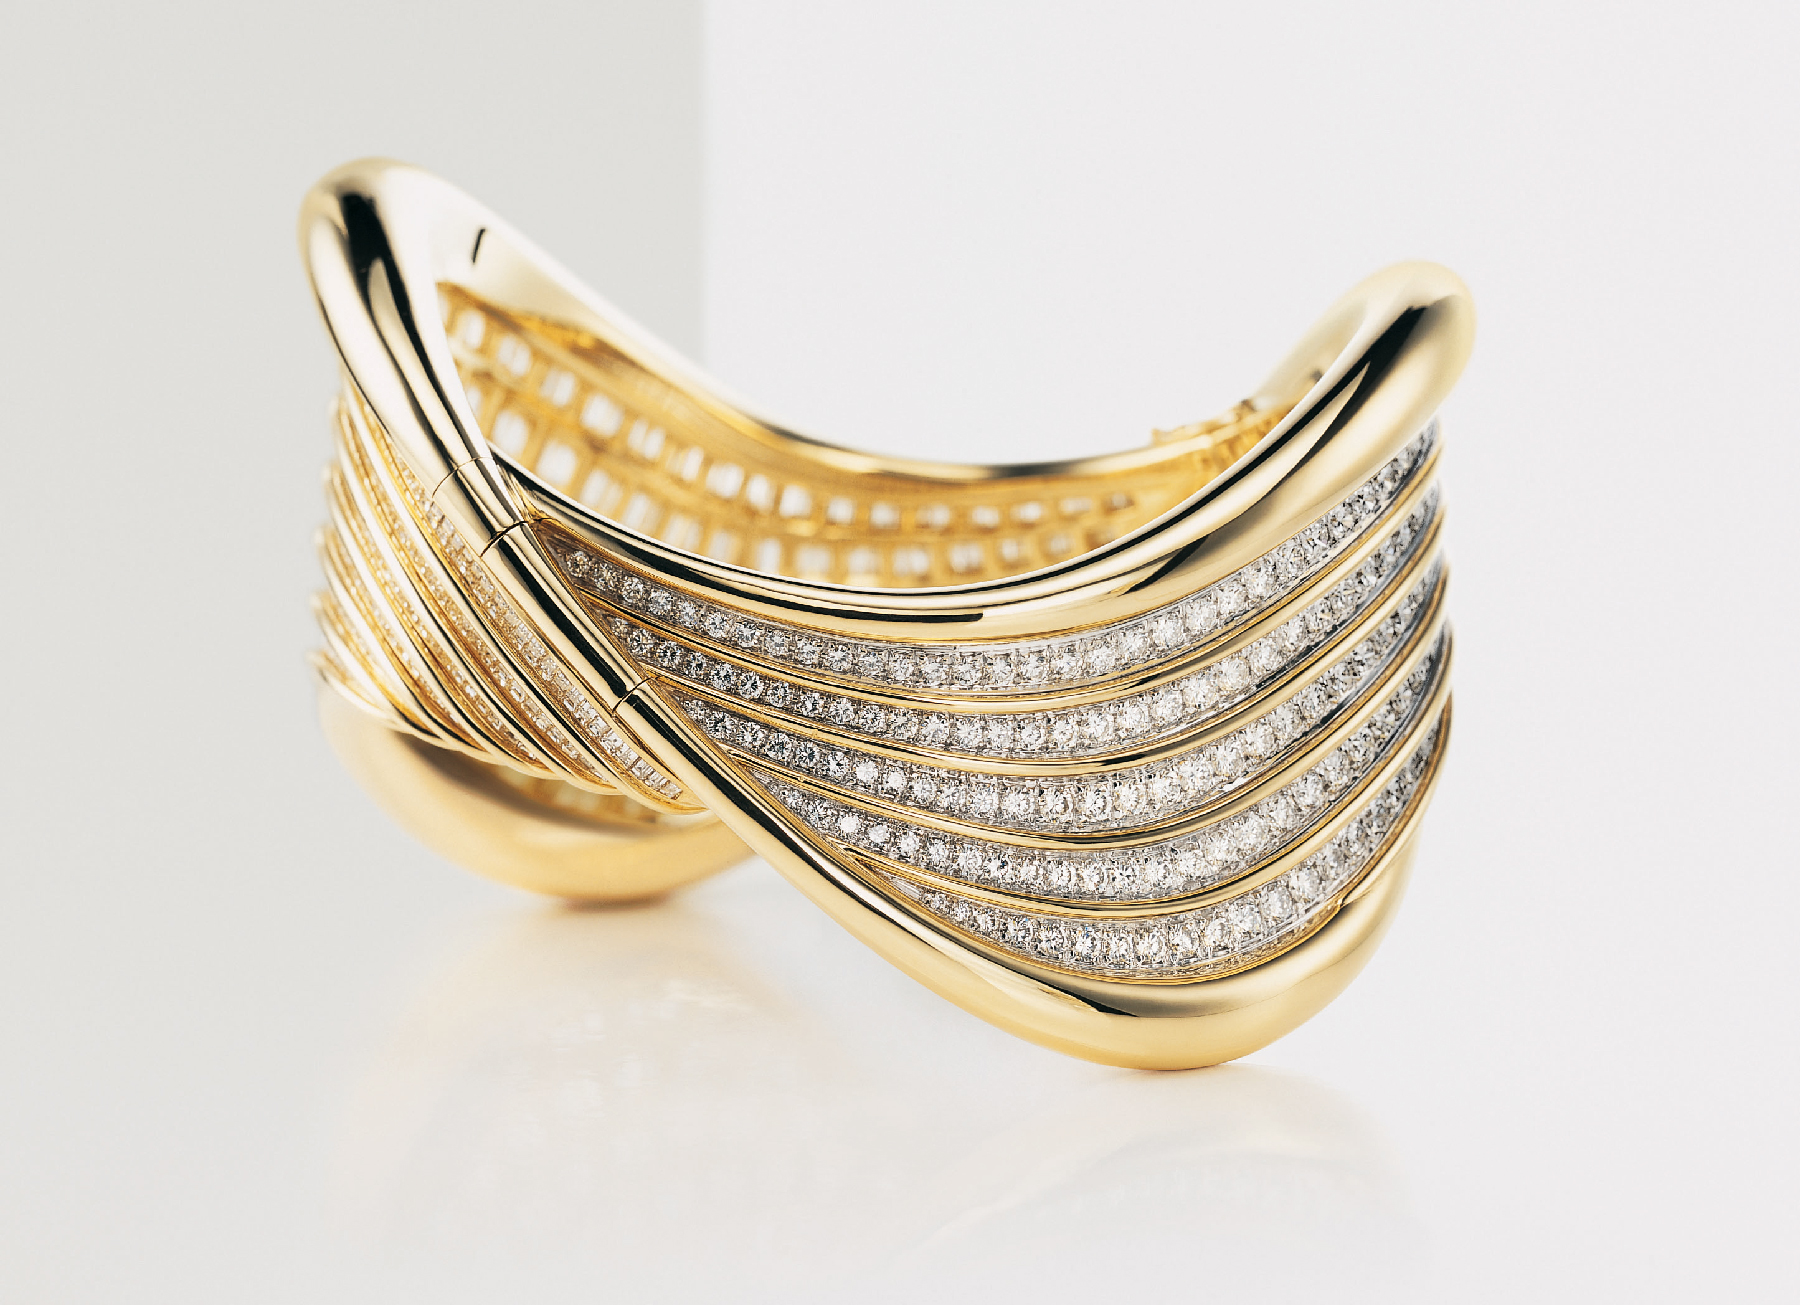 Onda Marina (1988), bracciale che si snoda in eleganti volute illuminate da 644 diamanti, tagliati a brillante e a baguette, per un totale di 46 carati, raggiungendo uno spettacolare effetto d’imponenza e plasticità